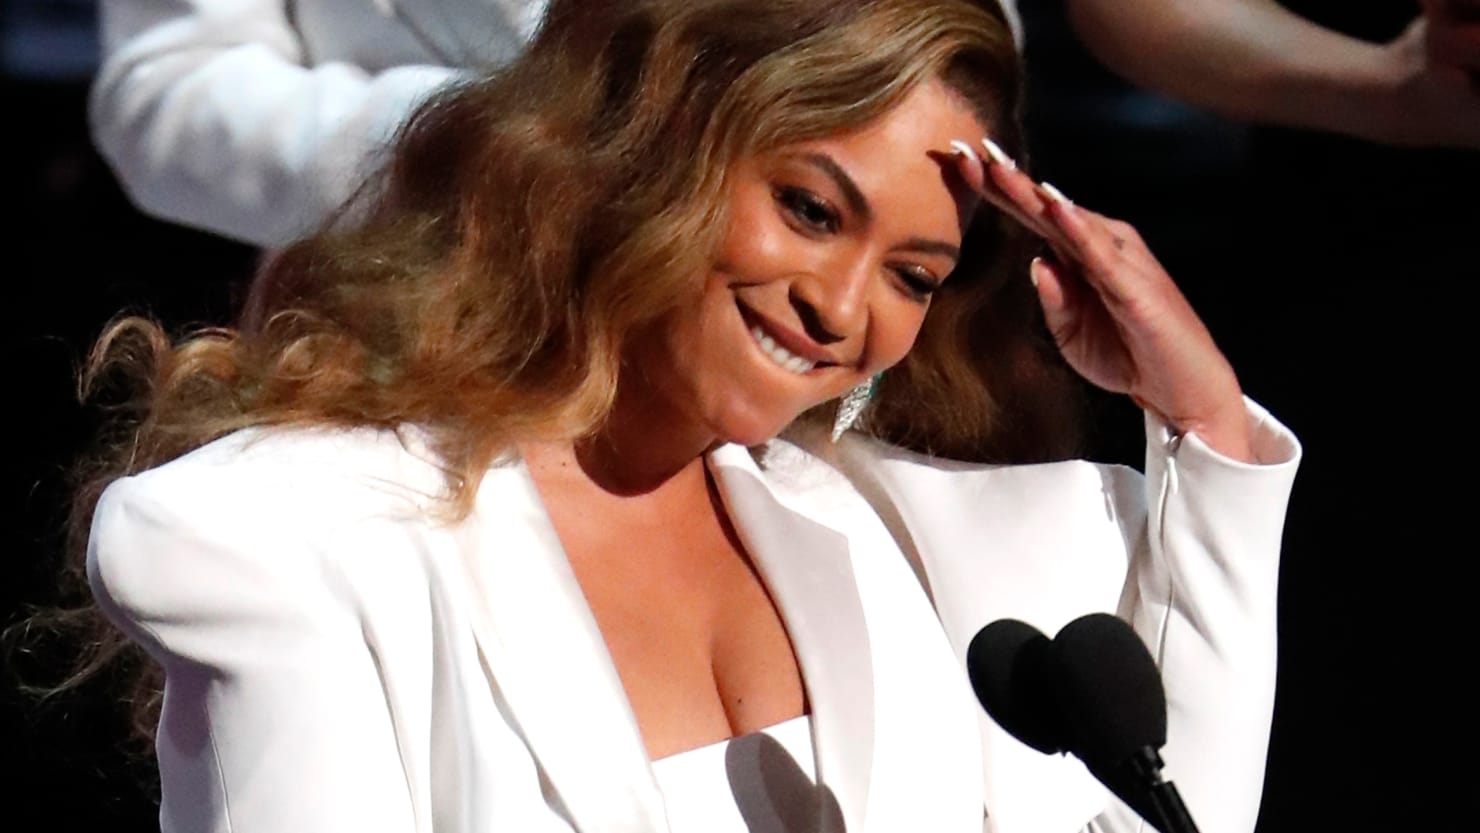 Markér i mellemtiden færdig Beyoncé Walked Out of Deal With Reebok Over Lack of Diversity: Report